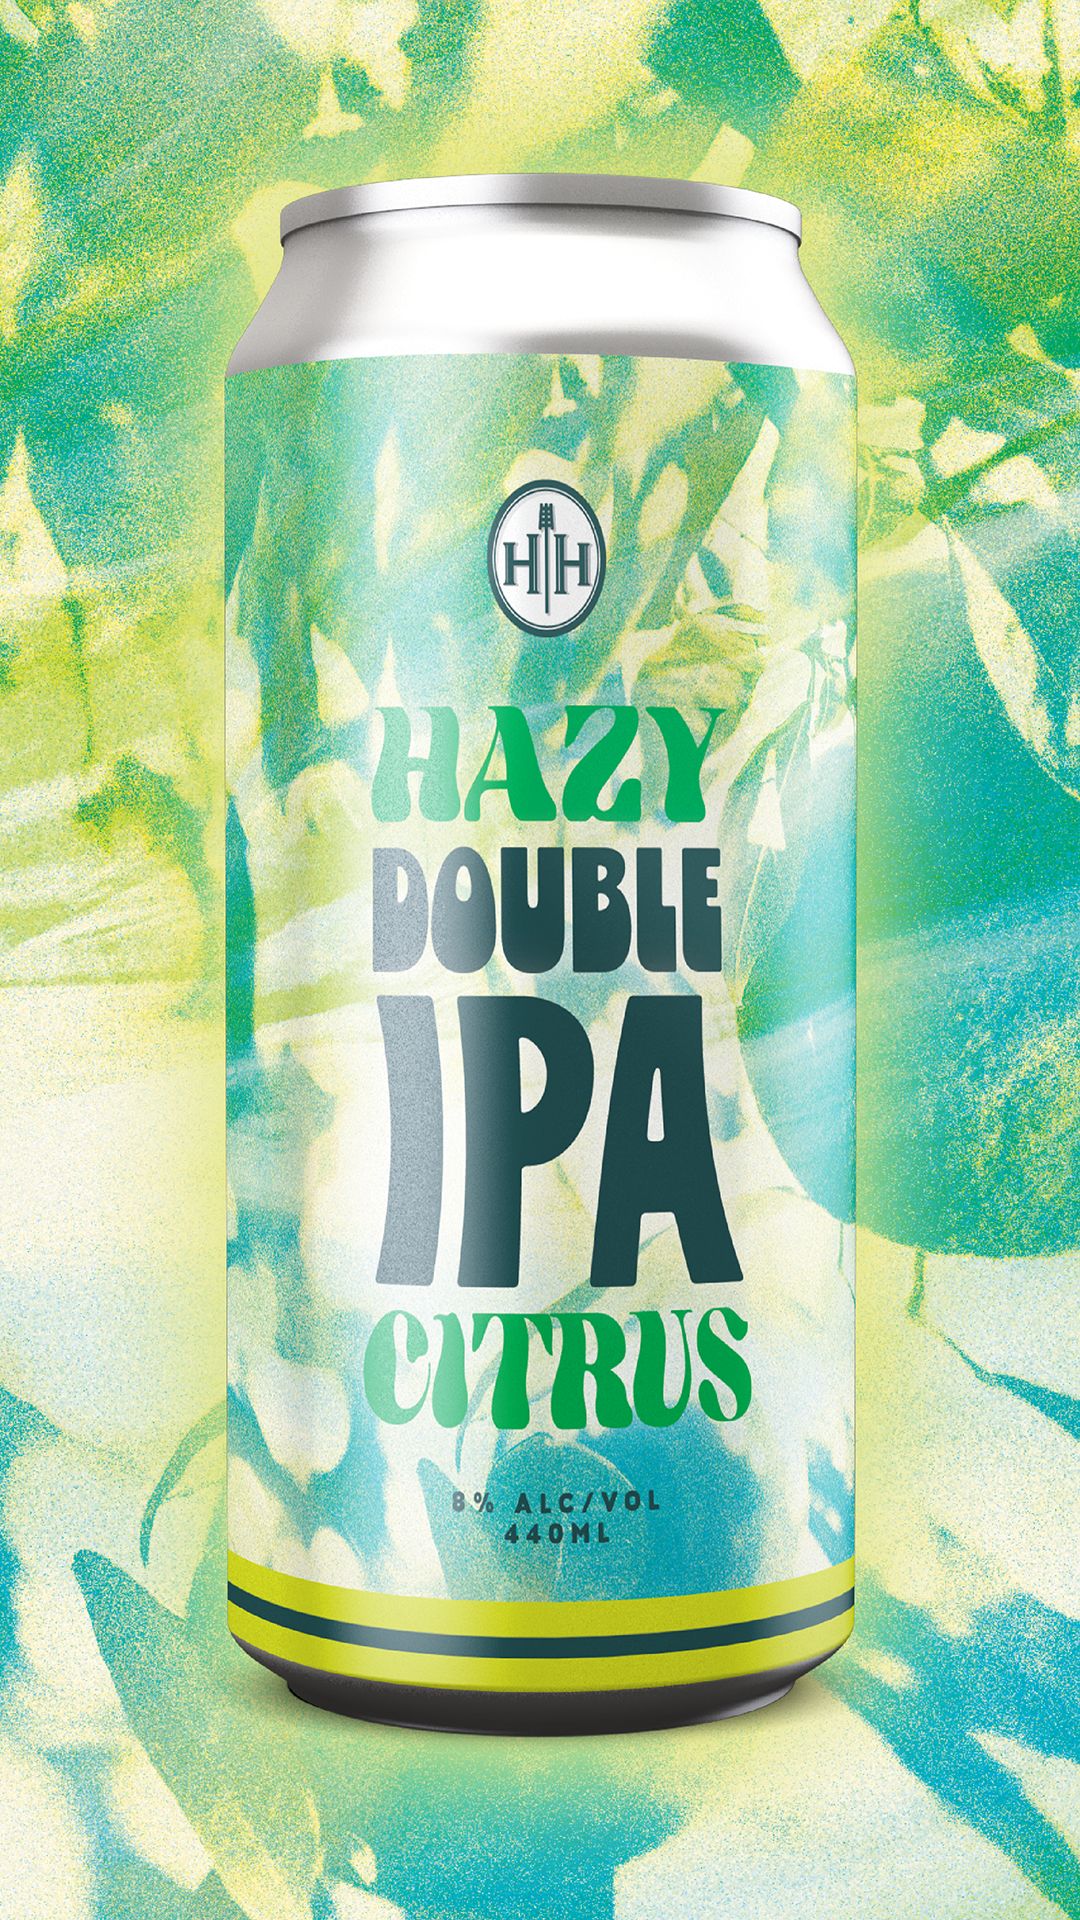 Hazy Double IPA - Citrus